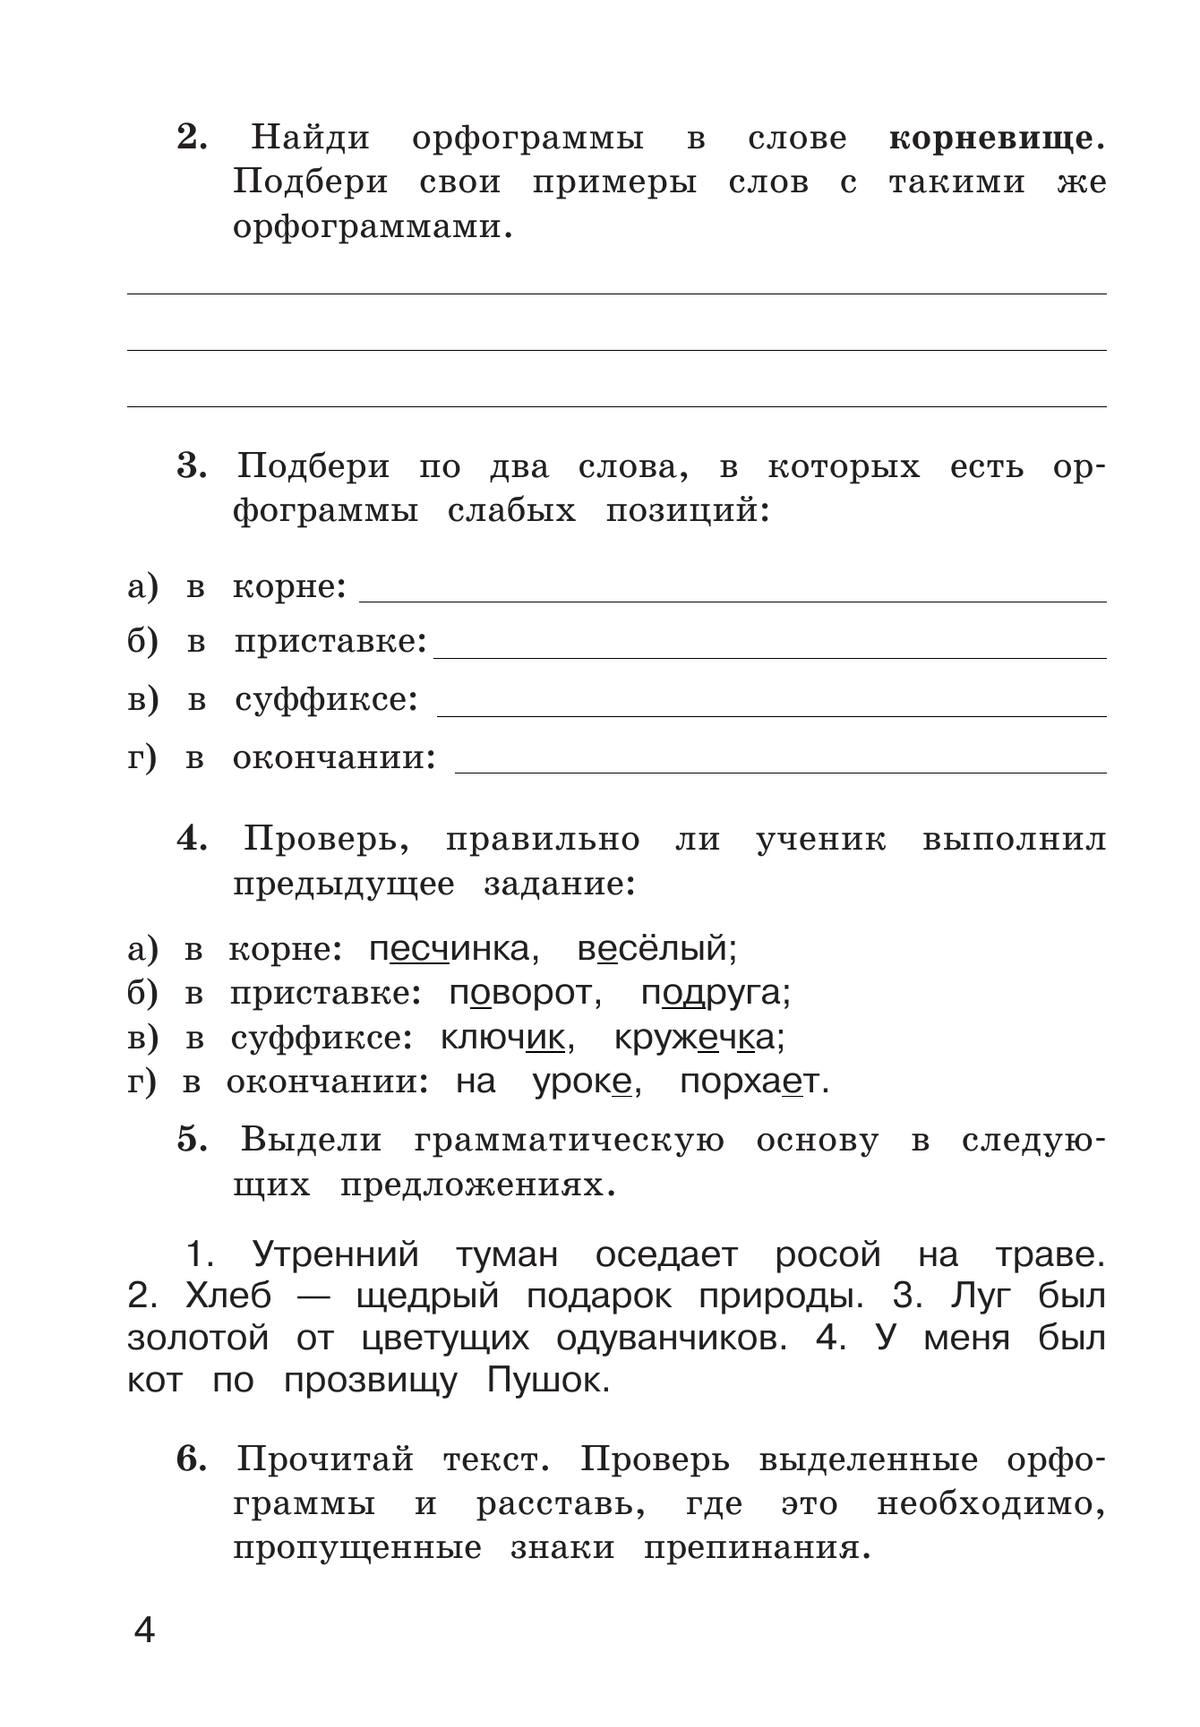 Рабочая тетрадь по русскому языку. 4 класс. В 2 частях. Часть 1 4